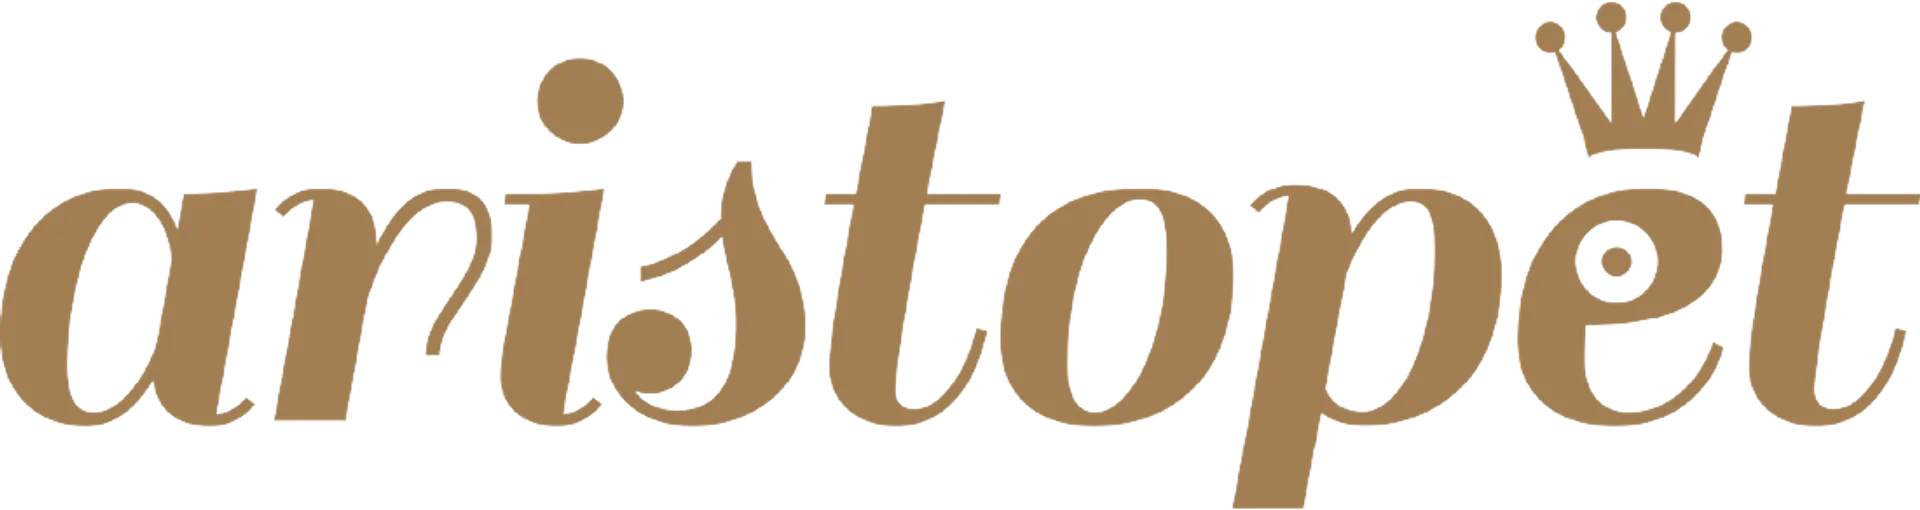 ASTORE MASCOTAS logo